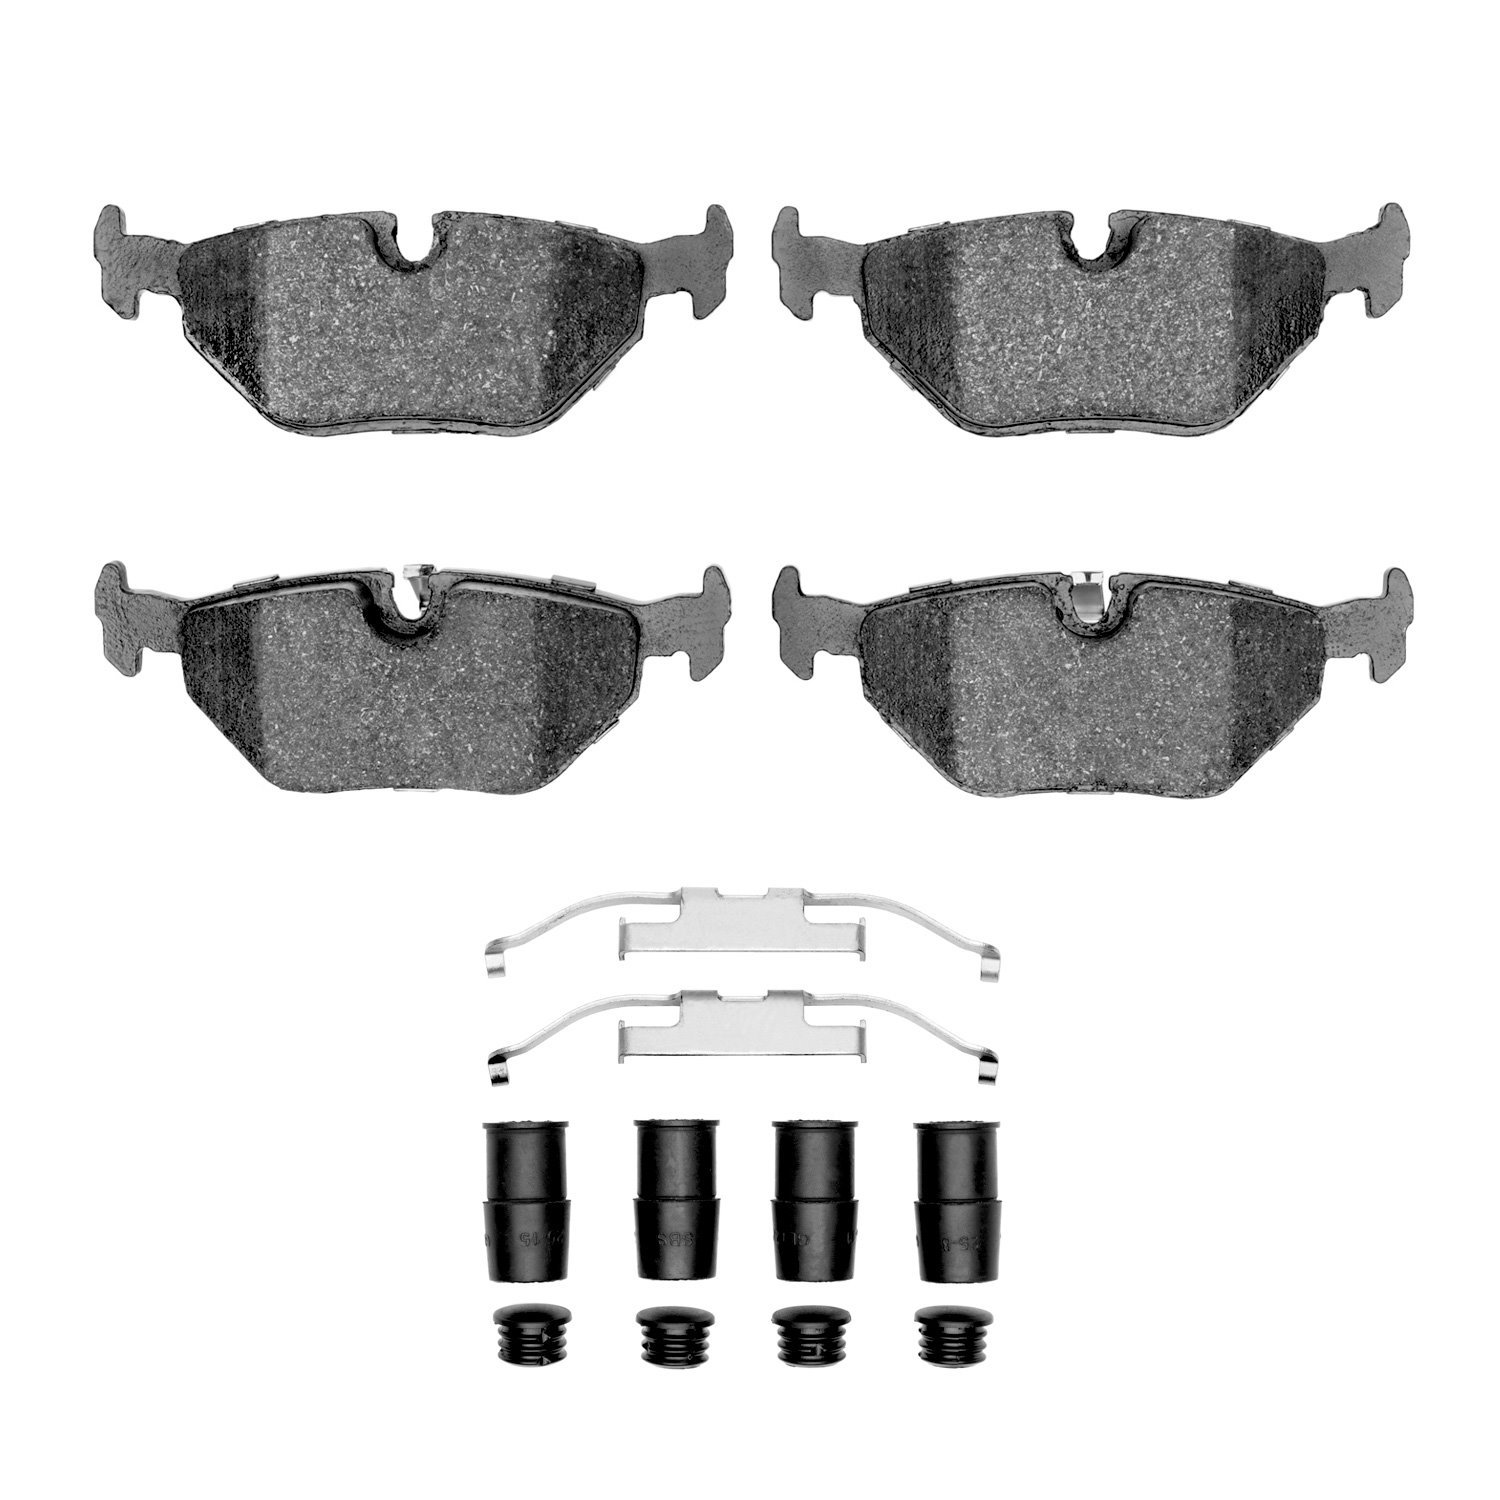 1310-0692-01 3000-Series Ceramic Brake Pads & Hardware Kit, 1991-2008 BMW, Position: Rear